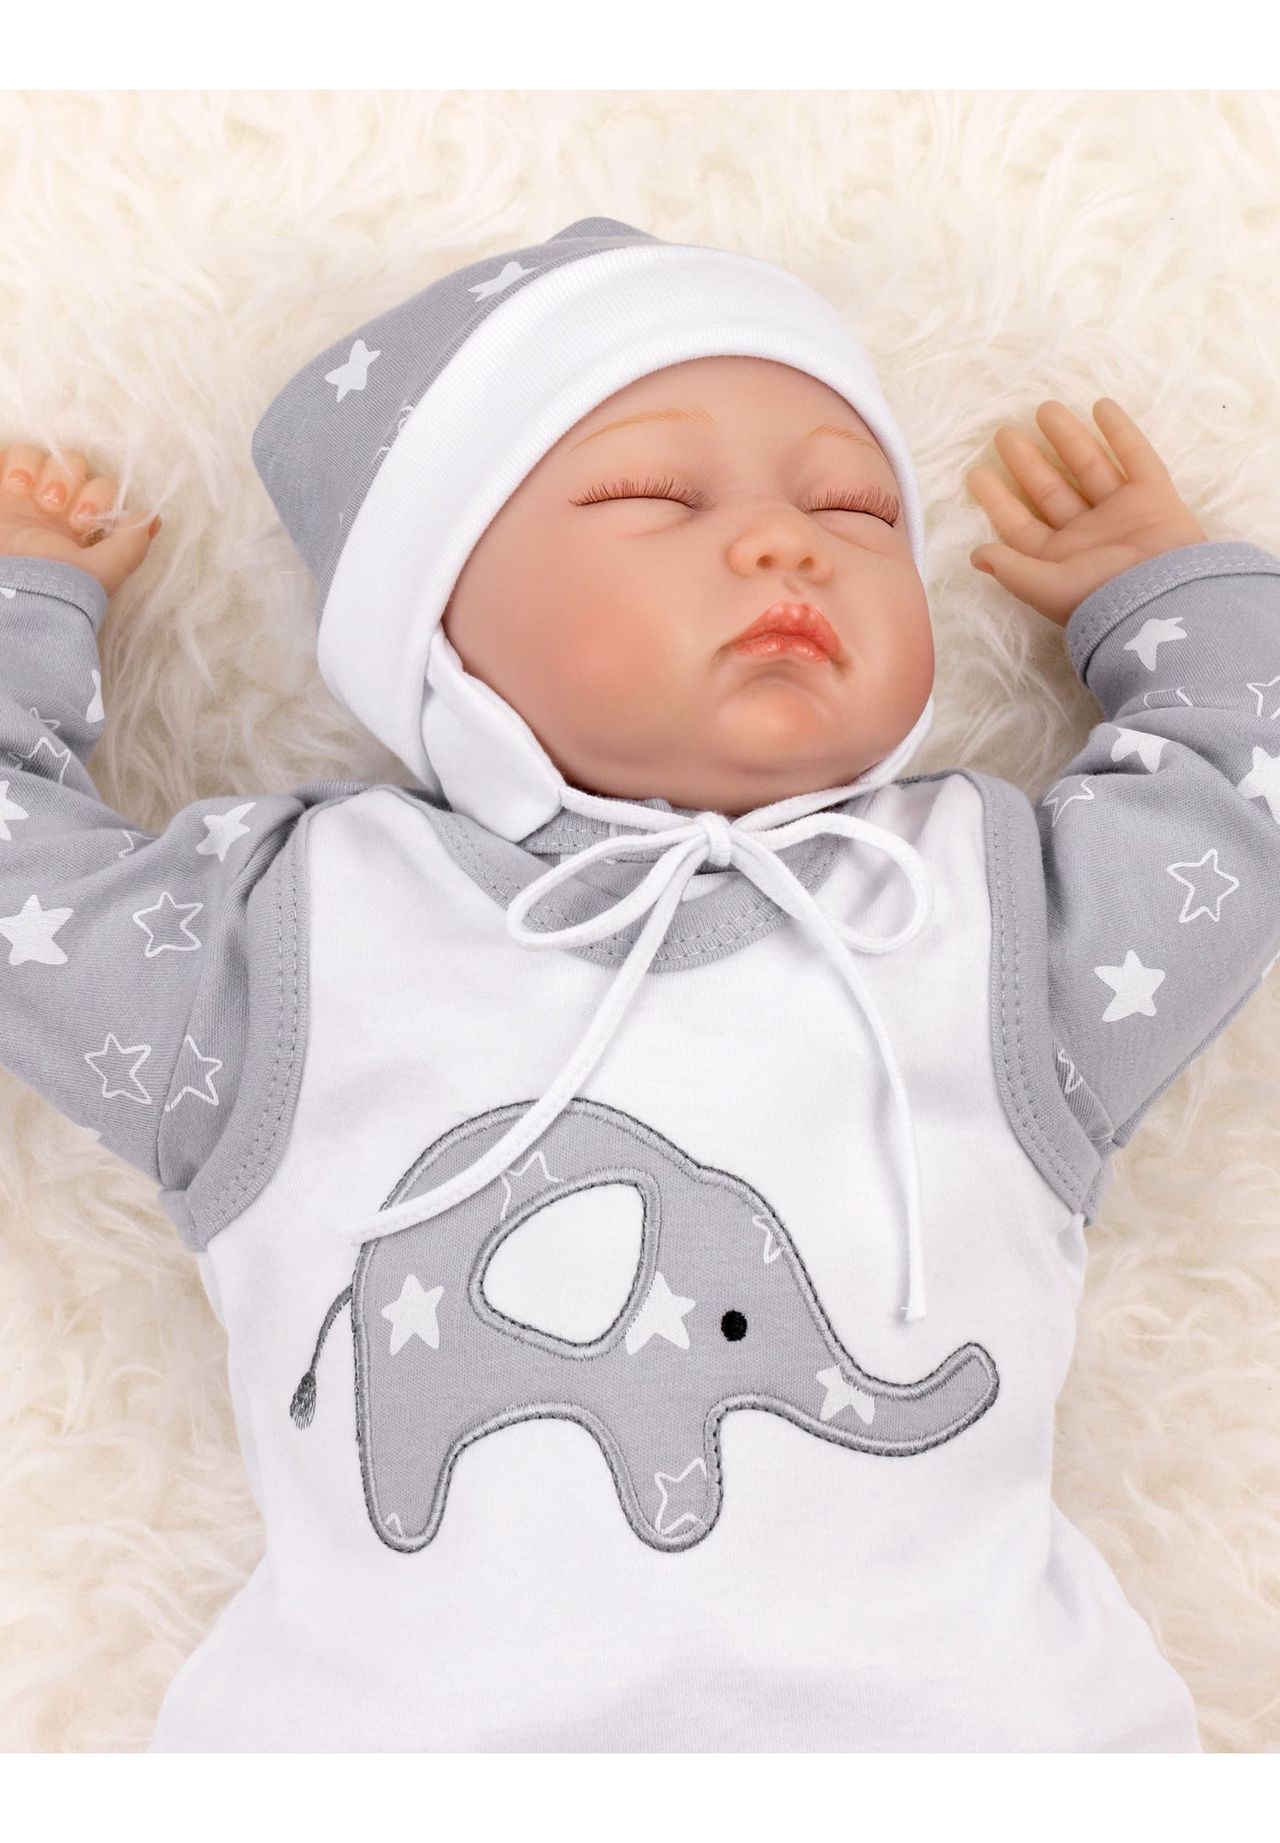 Kinder Babybekleidung BABY SWEETS 3tlg Set Strampler + Shirt + Mütze Little Elephant